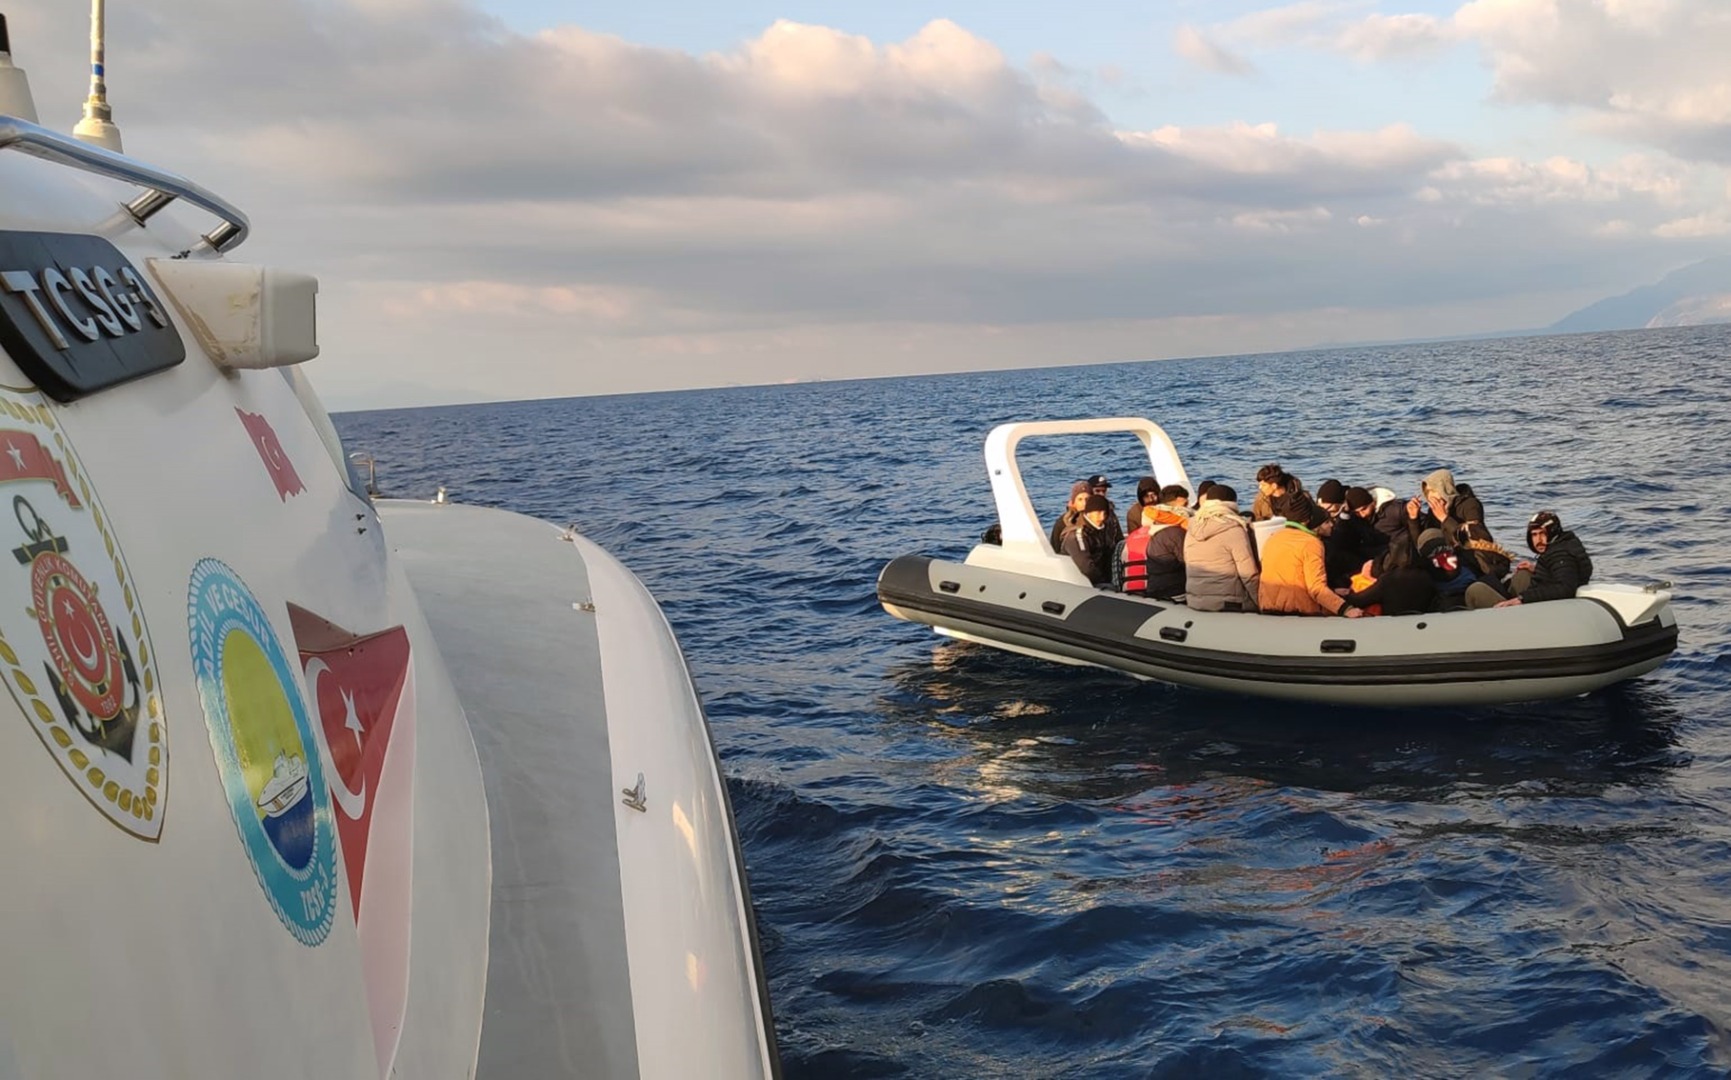 Datça’da 20 düzensiz göçmen kurtarıldı   